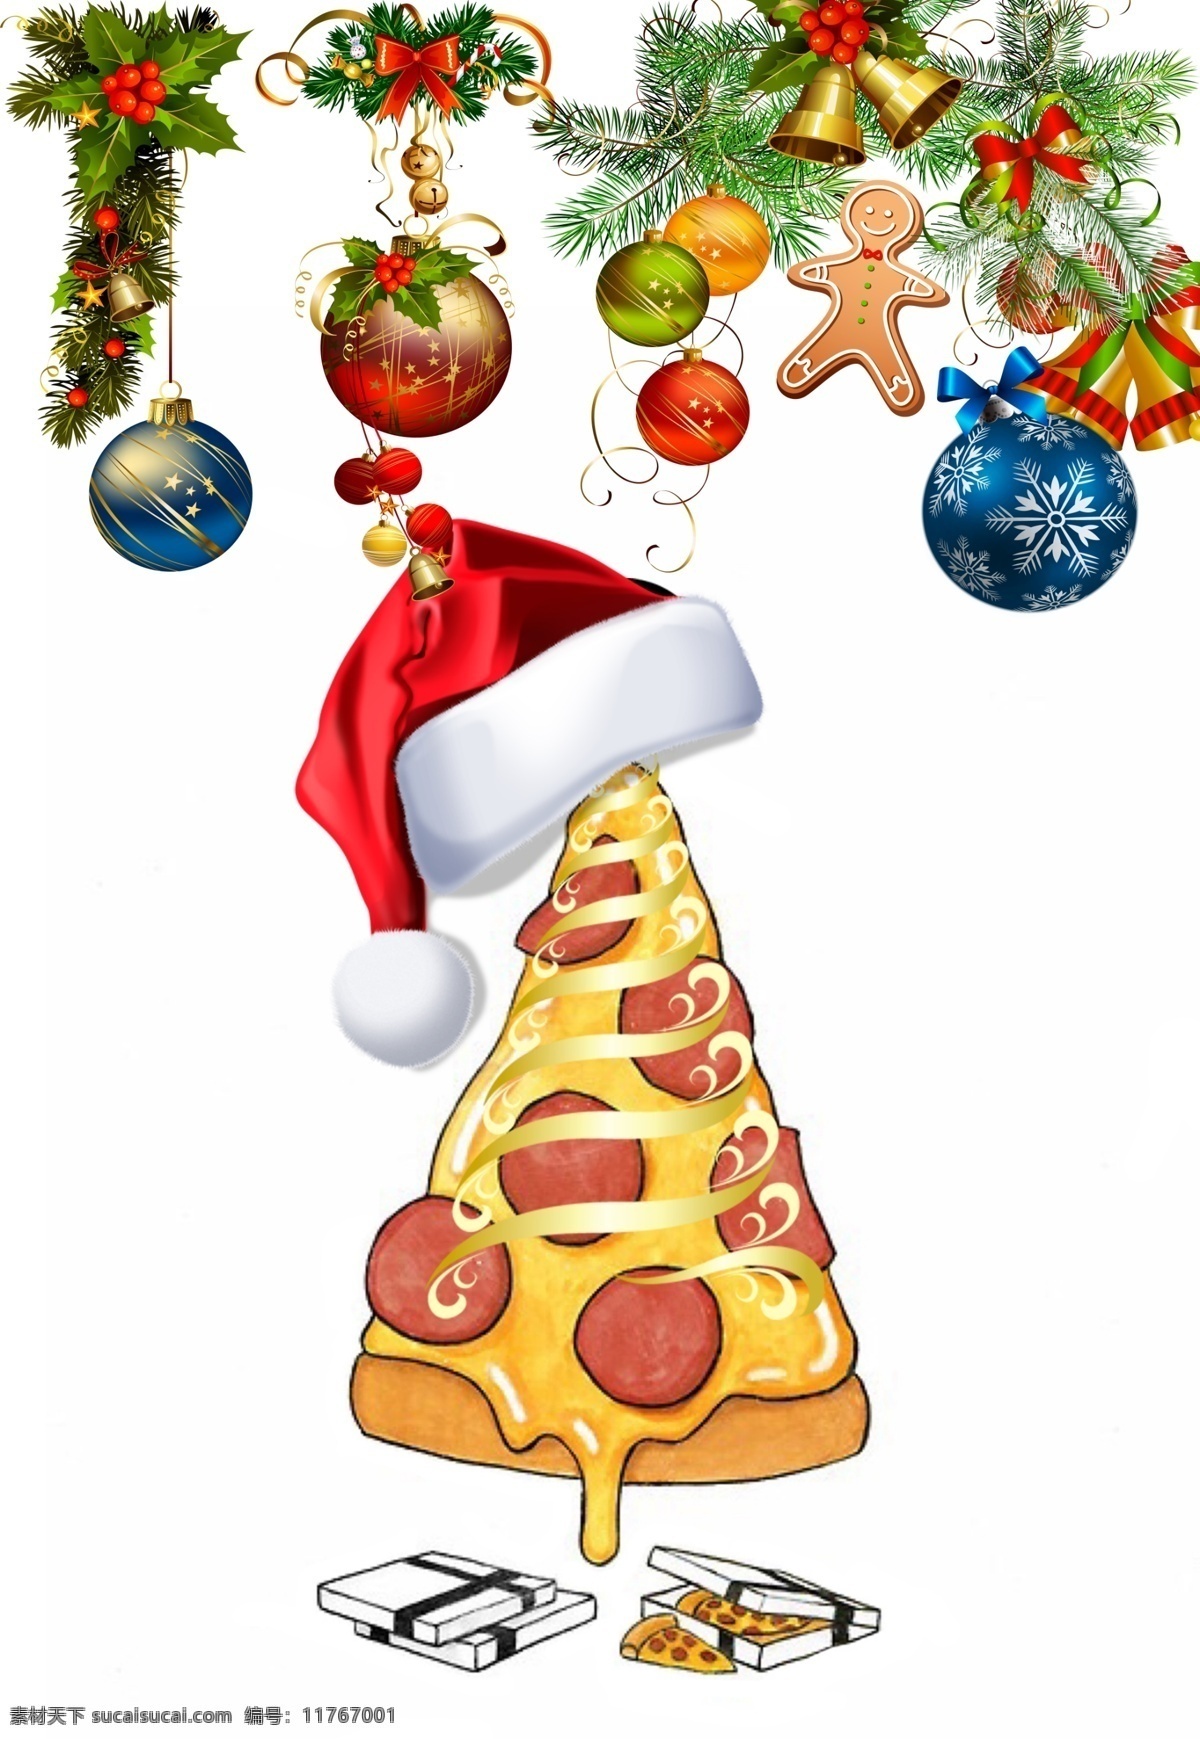 圣诞节 披萨 美食 铃铛 圣诞 帽 海报 蝴蝶结 节日素材 礼包 礼盒 礼物 圣诞节快乐 圣诞节素材 圣诞老人 圣诞帽